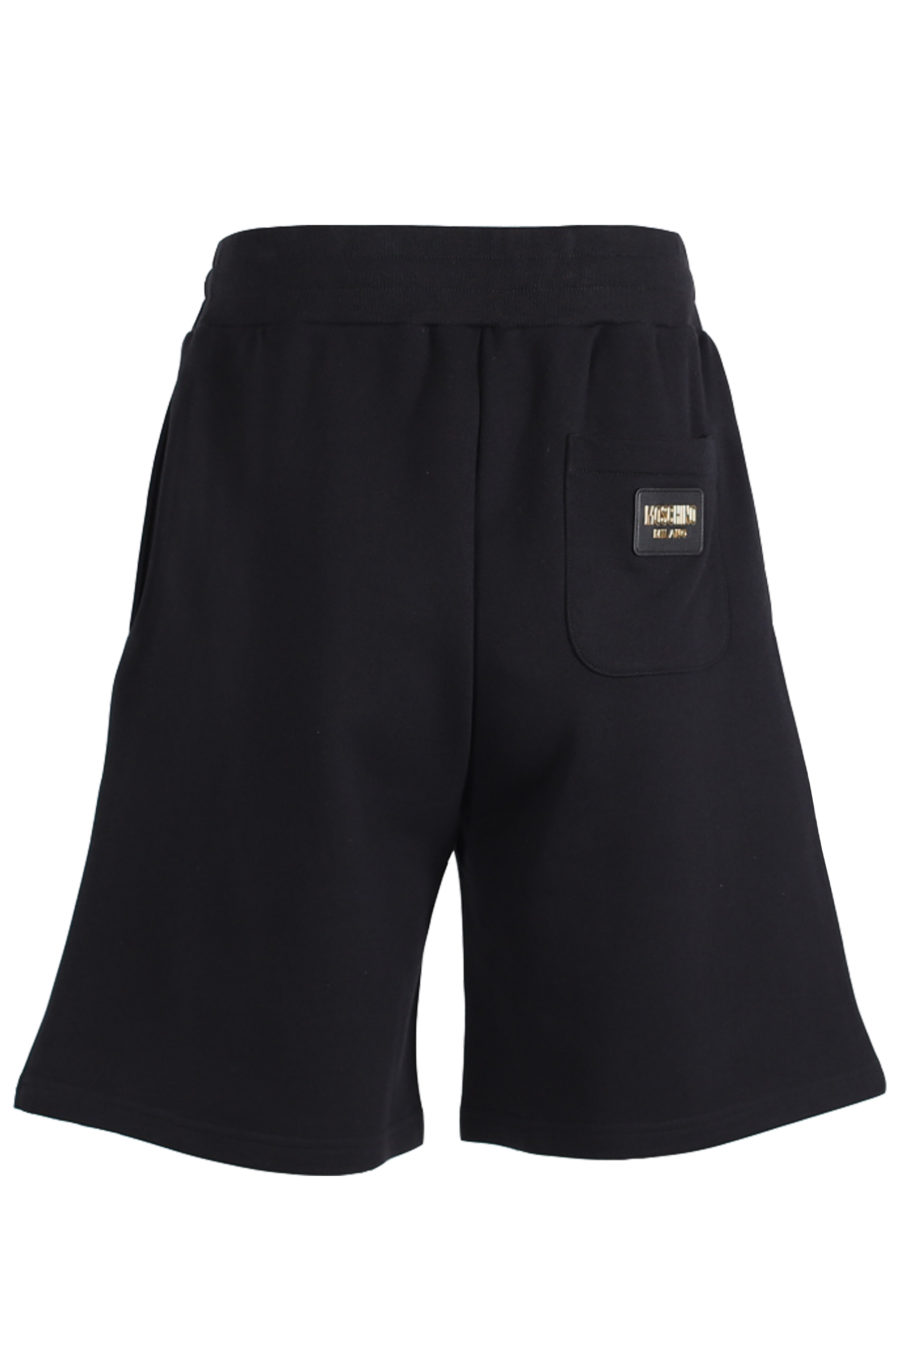 Schwarze Shorts mit goldenem Logo auf dem Rücken - IMG 1410